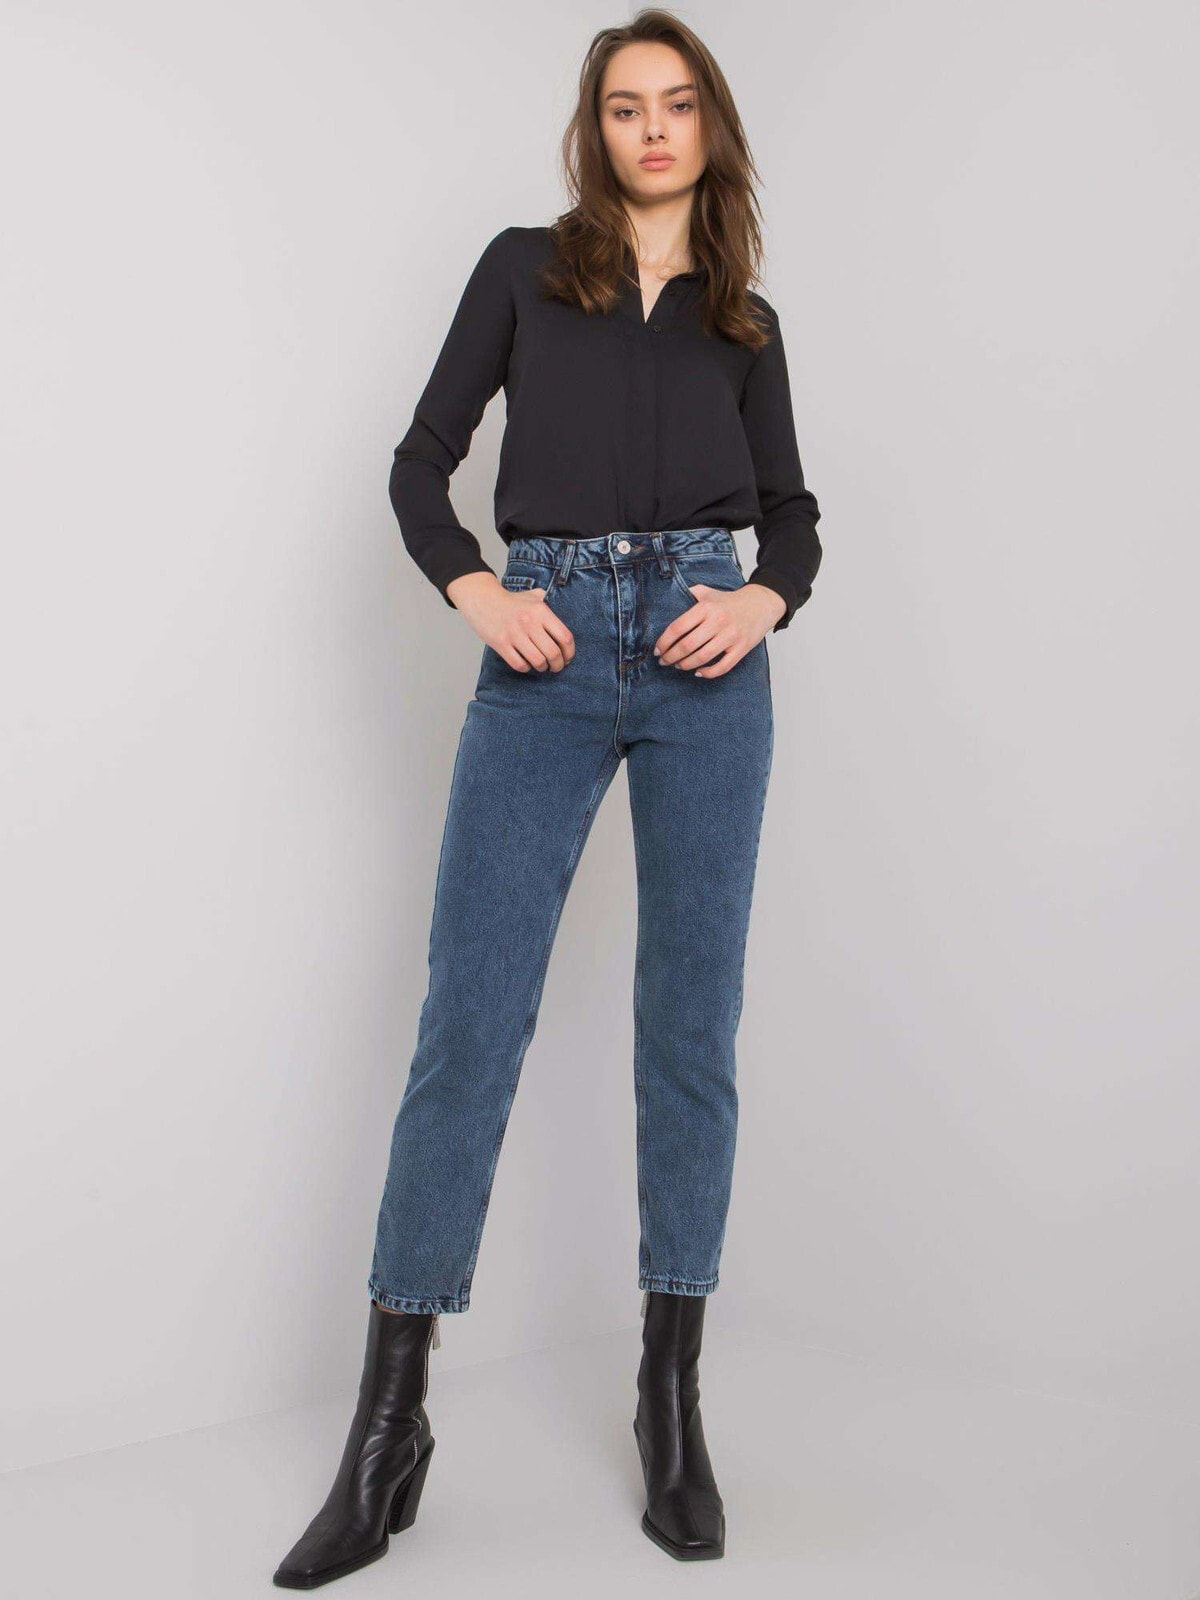 Женские джинсы mom Factory Price Spodnie jeans-MR-SP-5238-1.25-ciemny niebieski